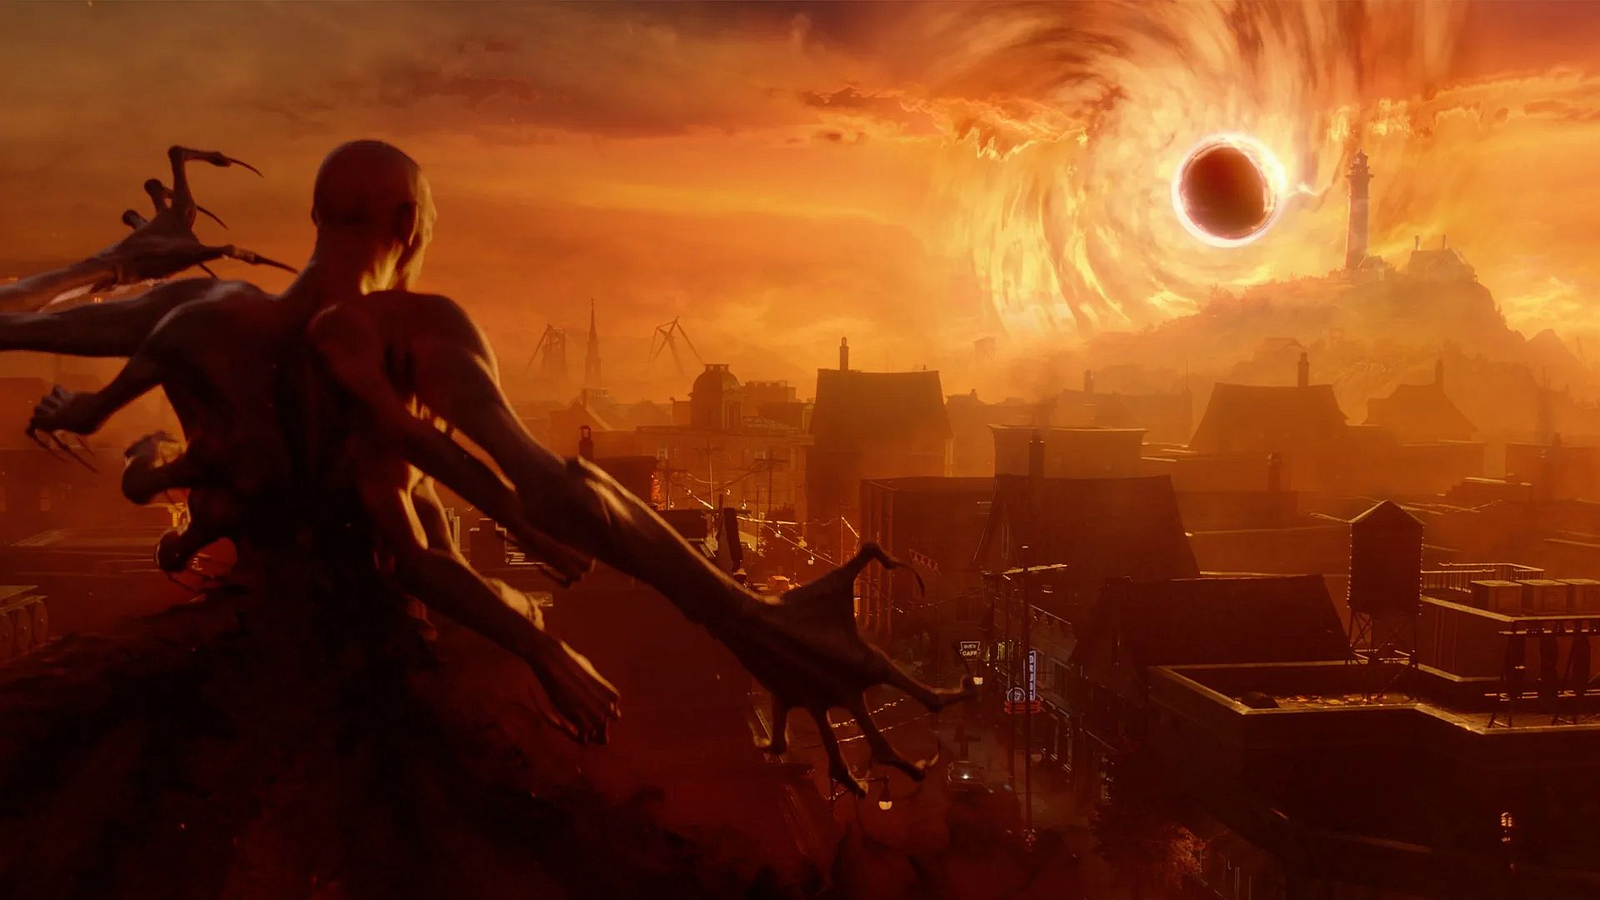 Redfall runs at 30 FPS on Xbox at launch. 😬 #redfall #gamingnews #gam